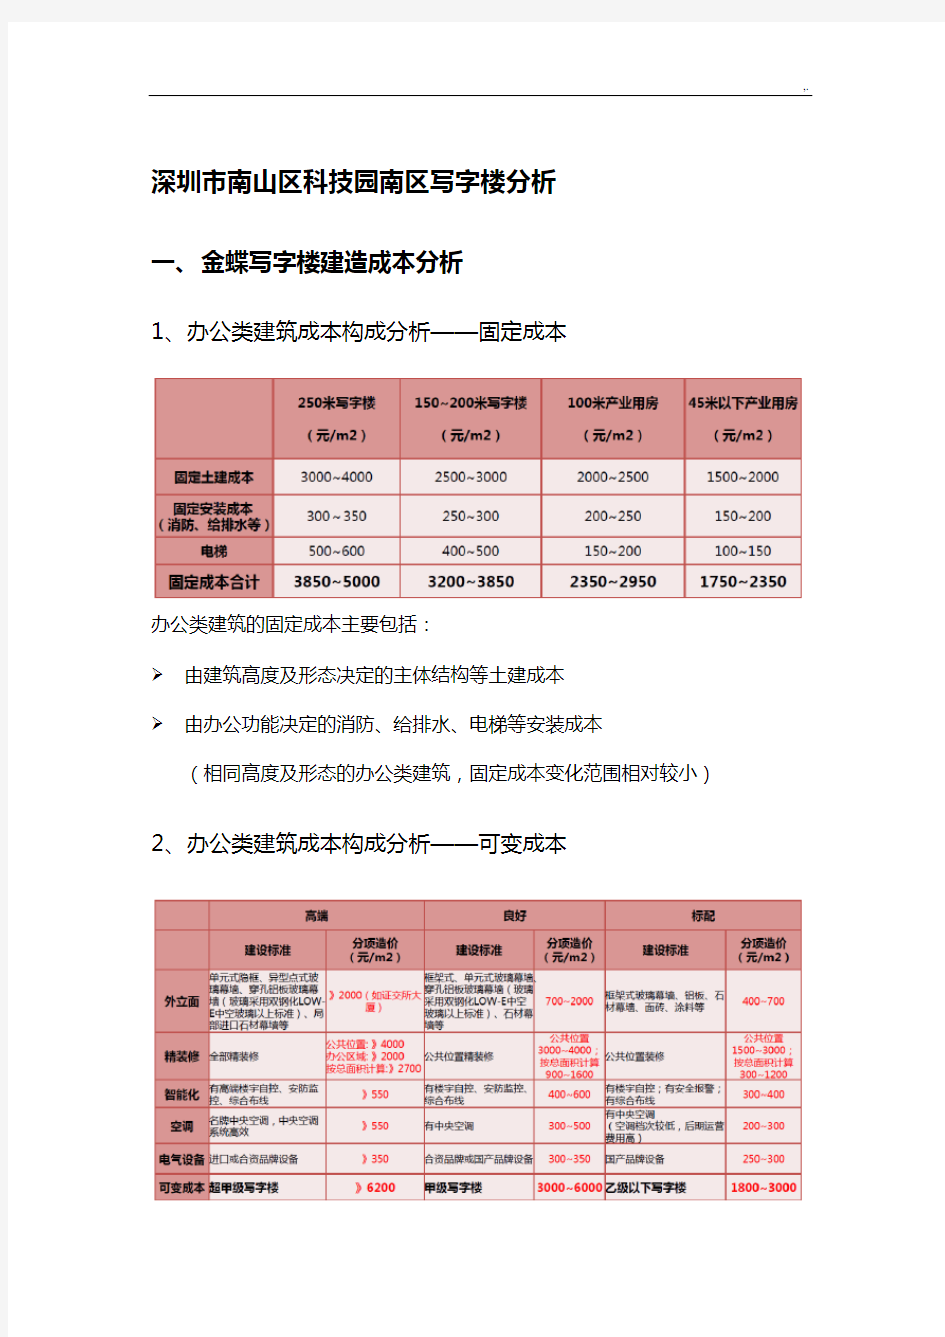 深圳市南山区科技园金蝶写字楼规划项目分析及对比